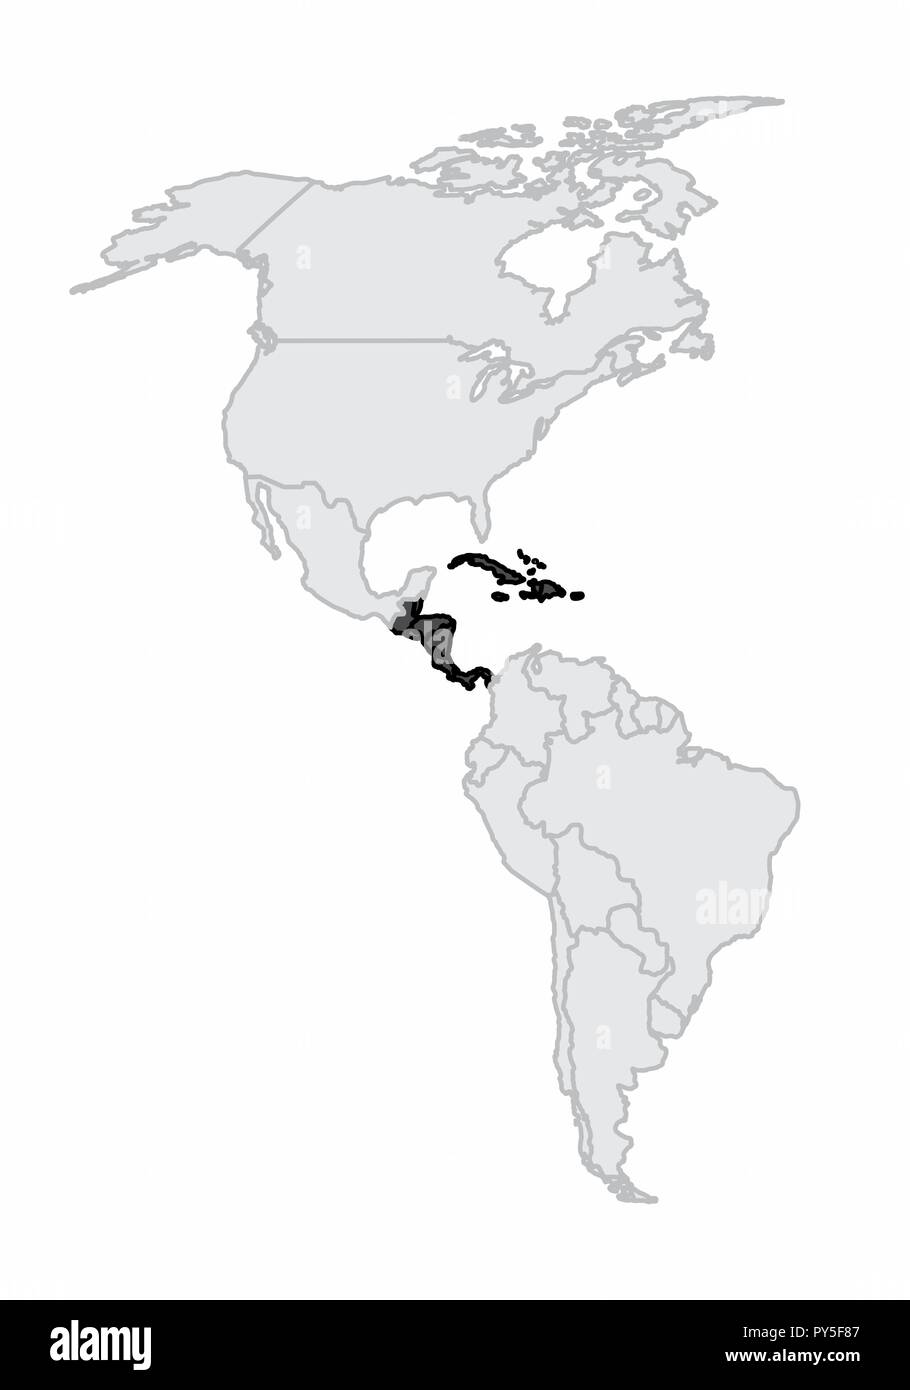 Eine Karte des amerikanischen Kontinents mit Mittelamerika und der Karibik hervorgehoben Stock Vektor